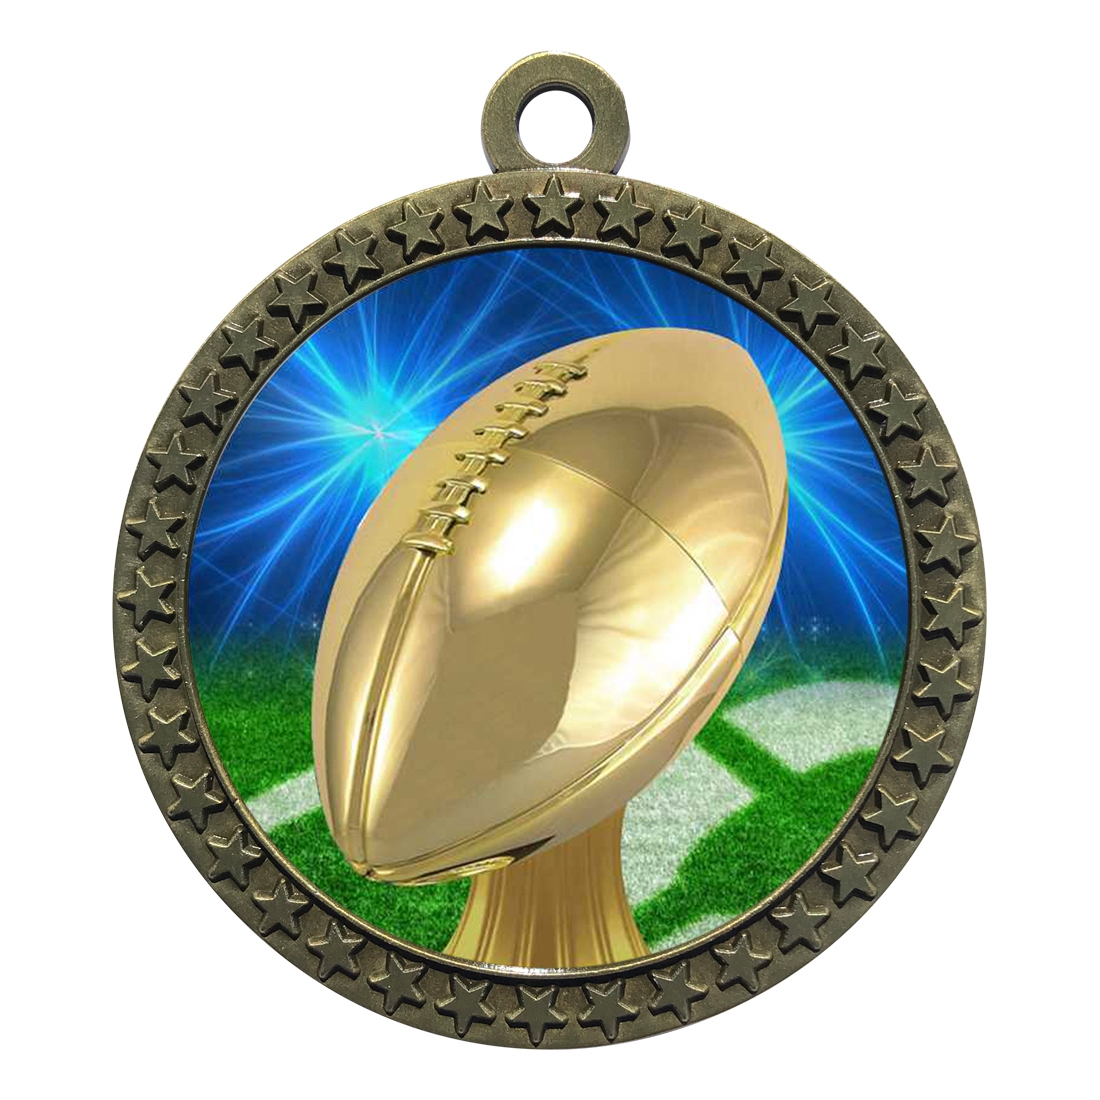 2-1/2" Football Medal